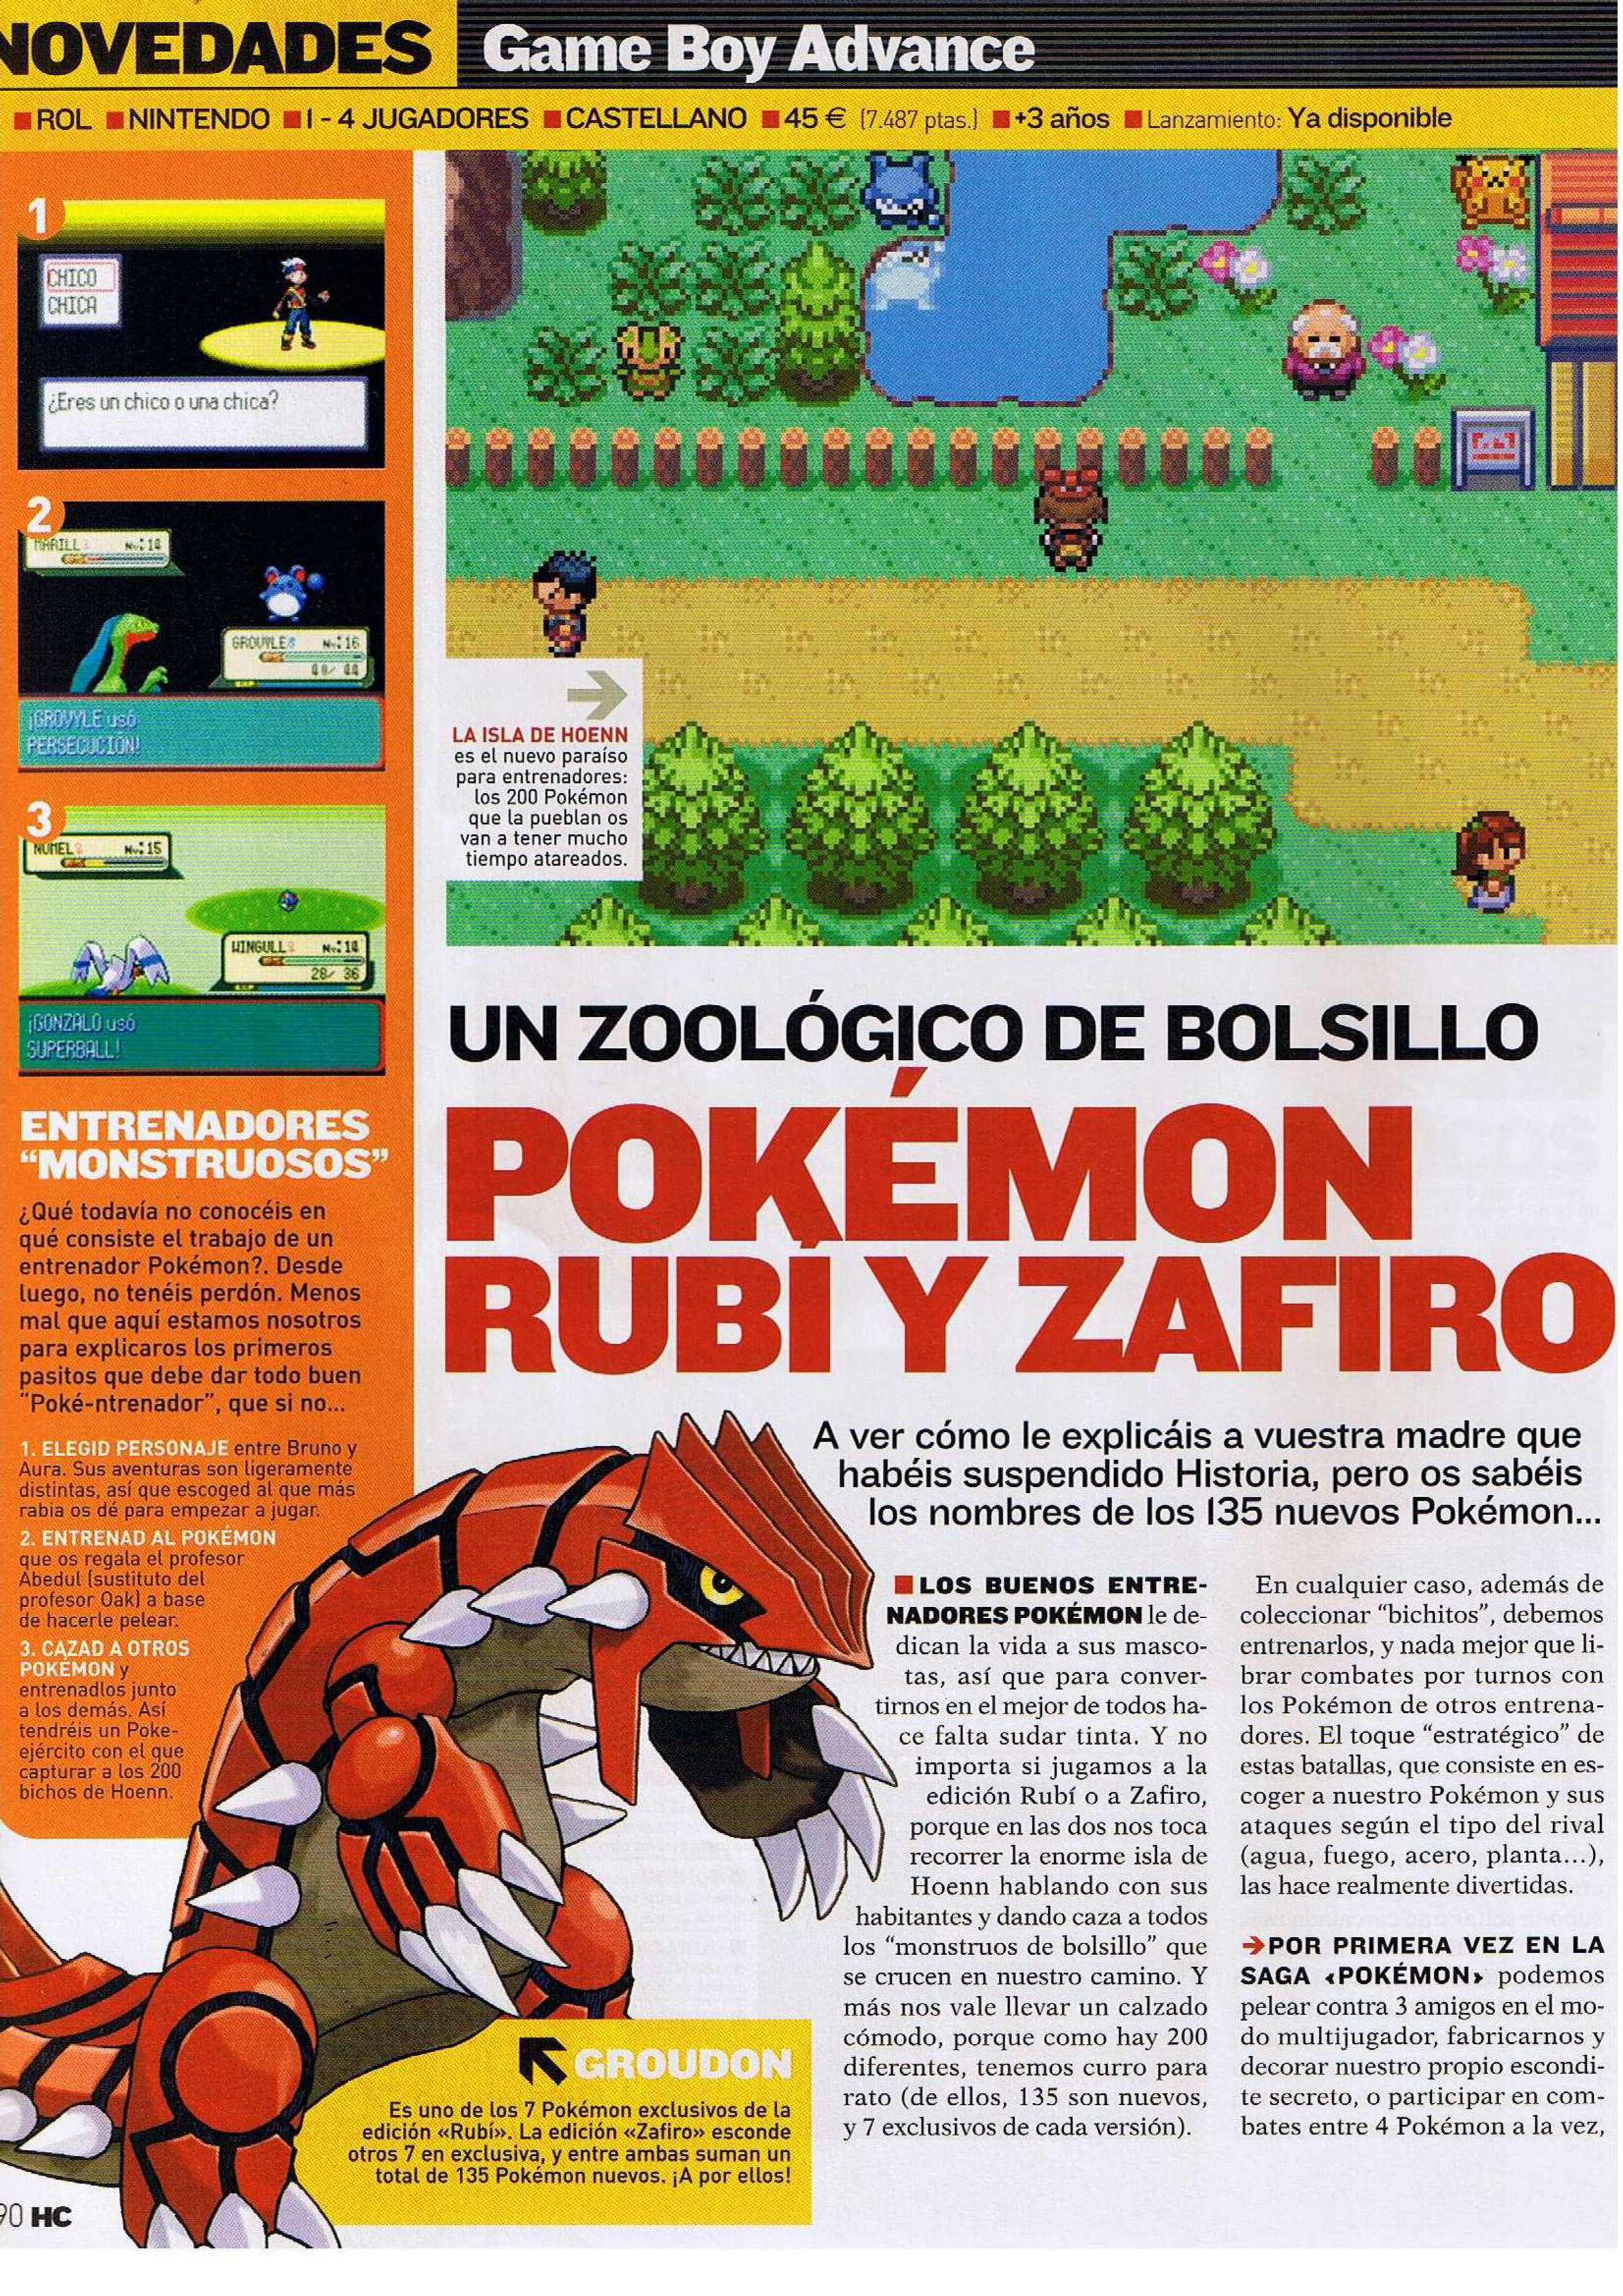 Pokémon Rubí - Zafiro